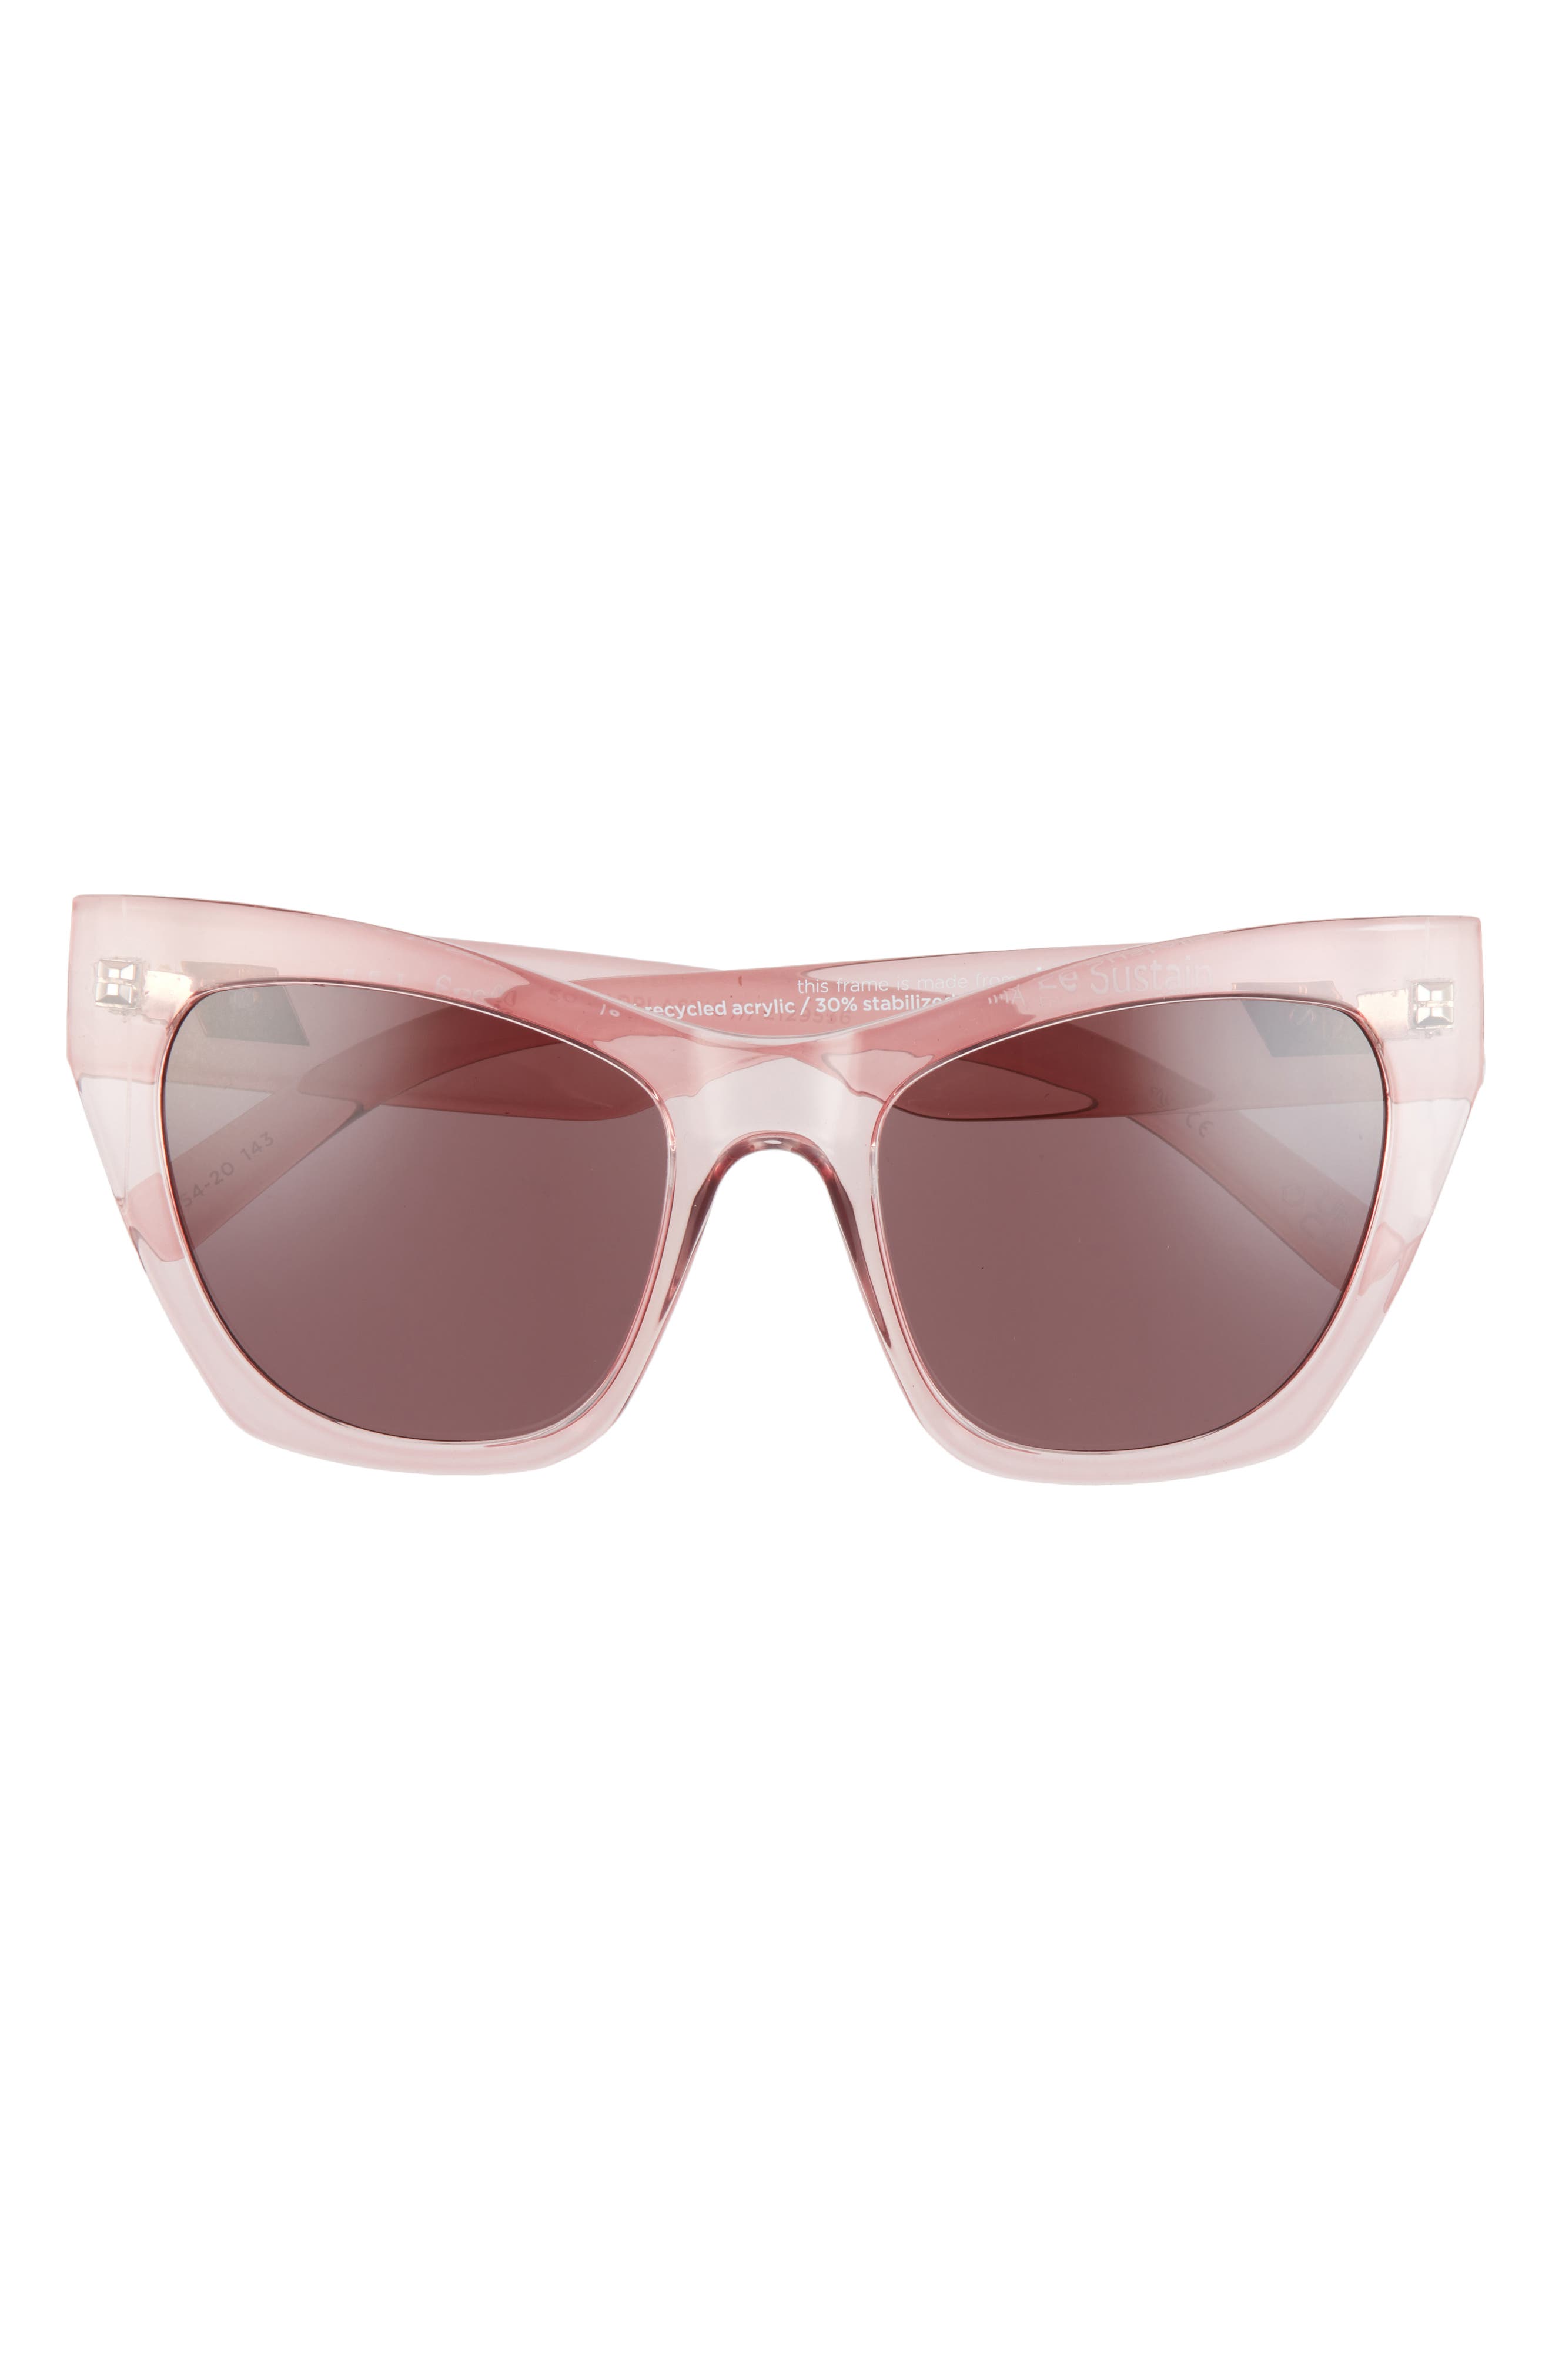 Le Specs So Sarplastic 54mm Cat Eye Sunglasses in Rose Spritz /Plum Mono at Nordstrom